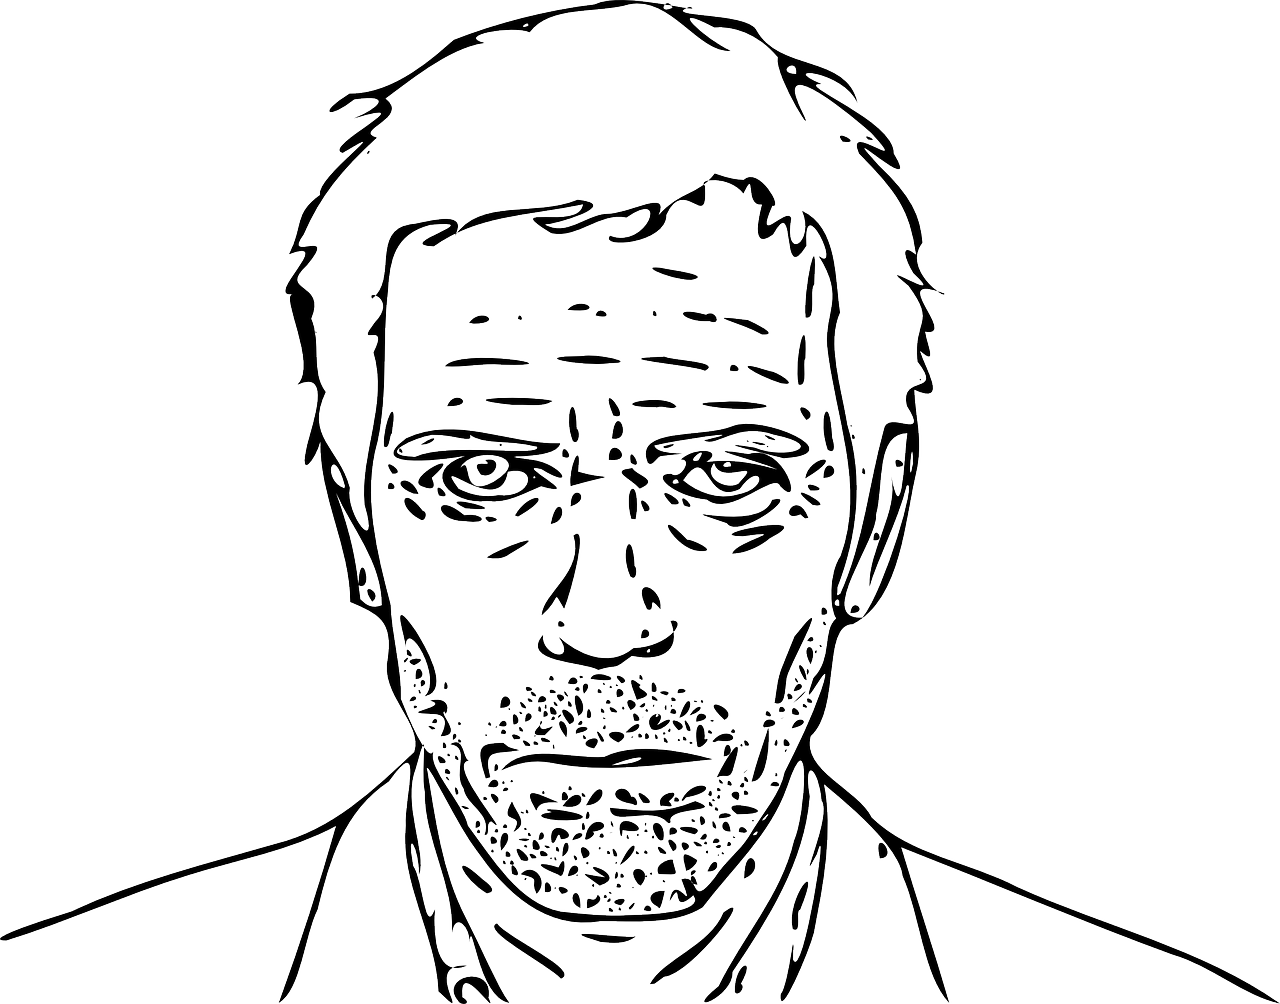 Dr. House’s portrait